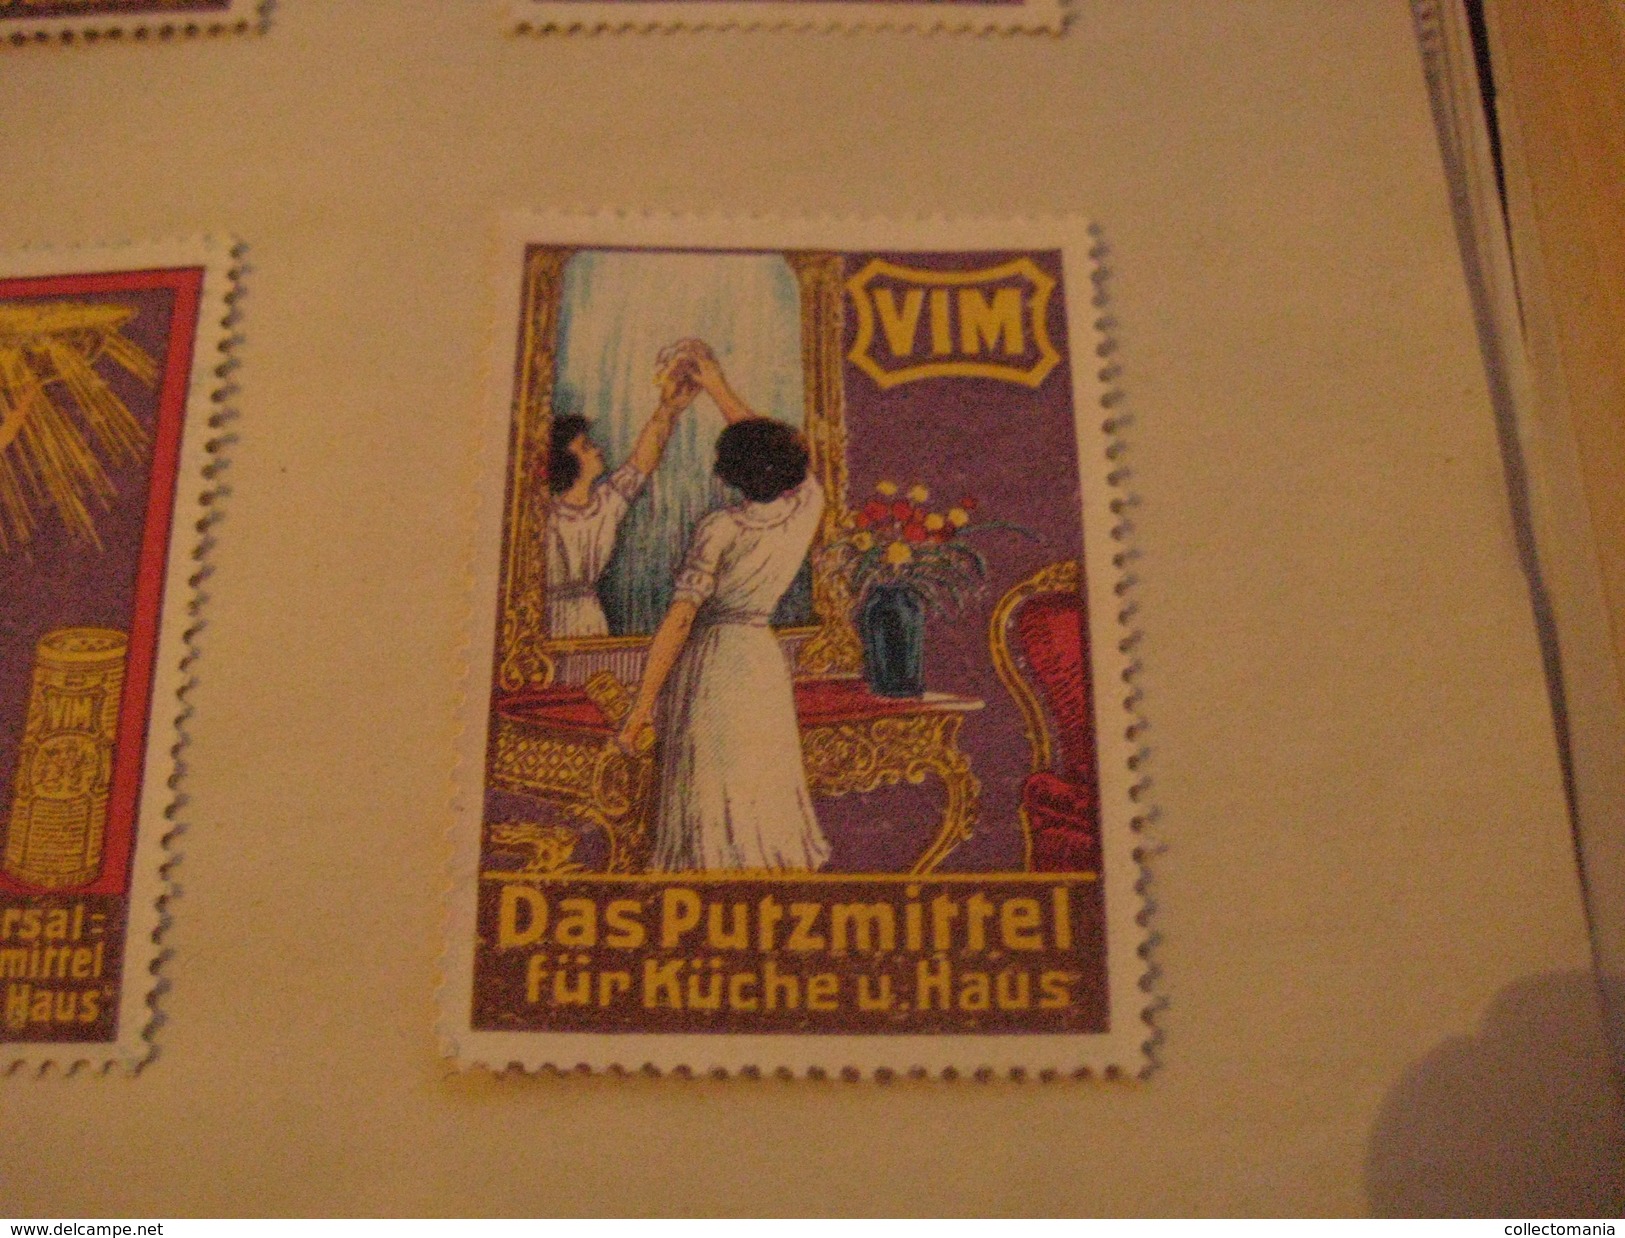 6 poster stamp advertising LUX Waschmittel PUTZmittel VIM  litho ART putzt alles